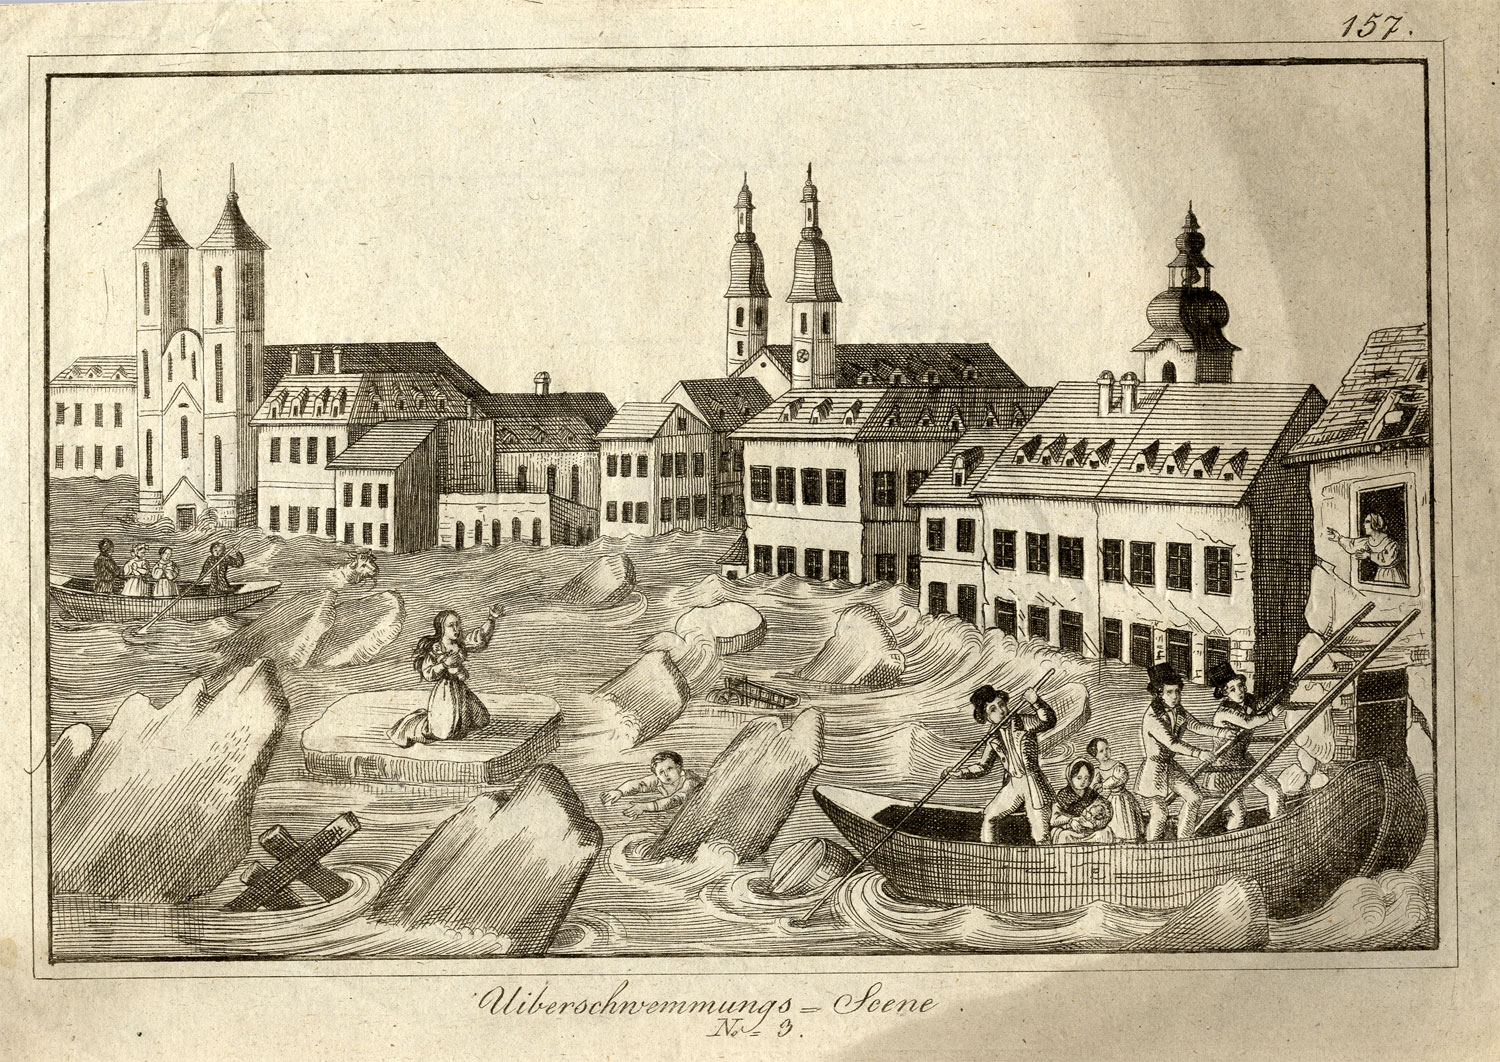 Az 1838-as pesti árvíz